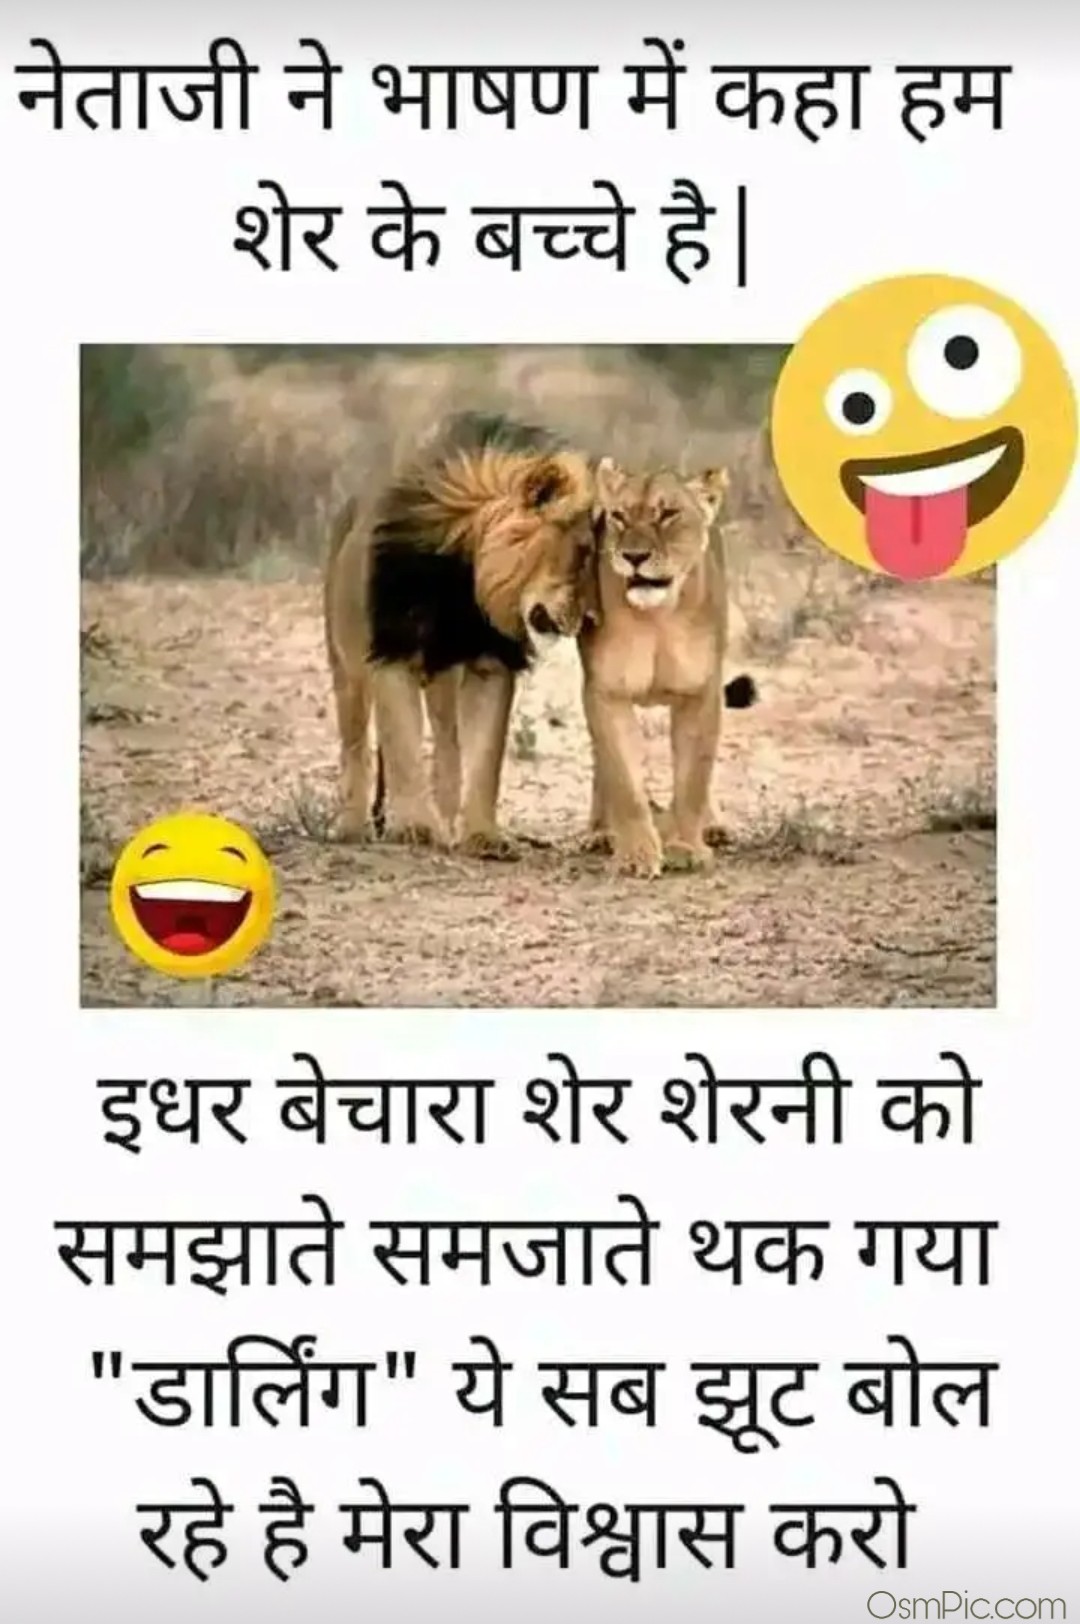 Very funny WhatsApp status image in hindi.